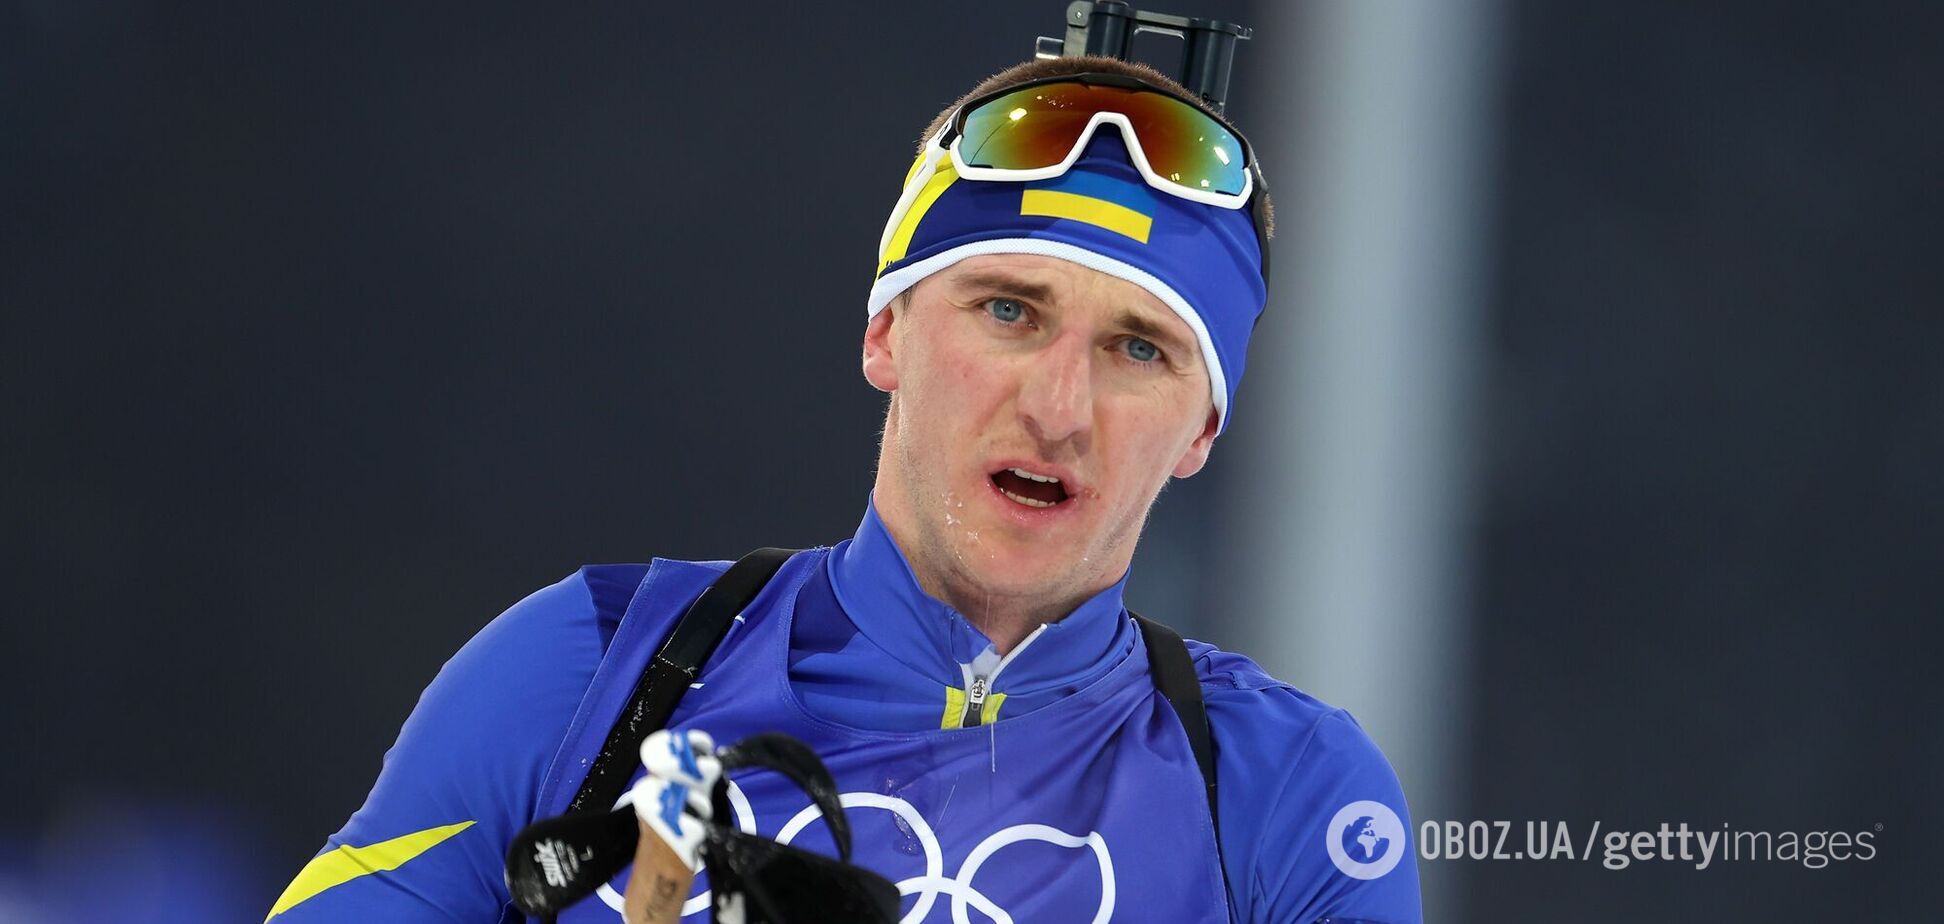 Український біатлоніст на Олімпіаді відзначився шляхетним вчинком